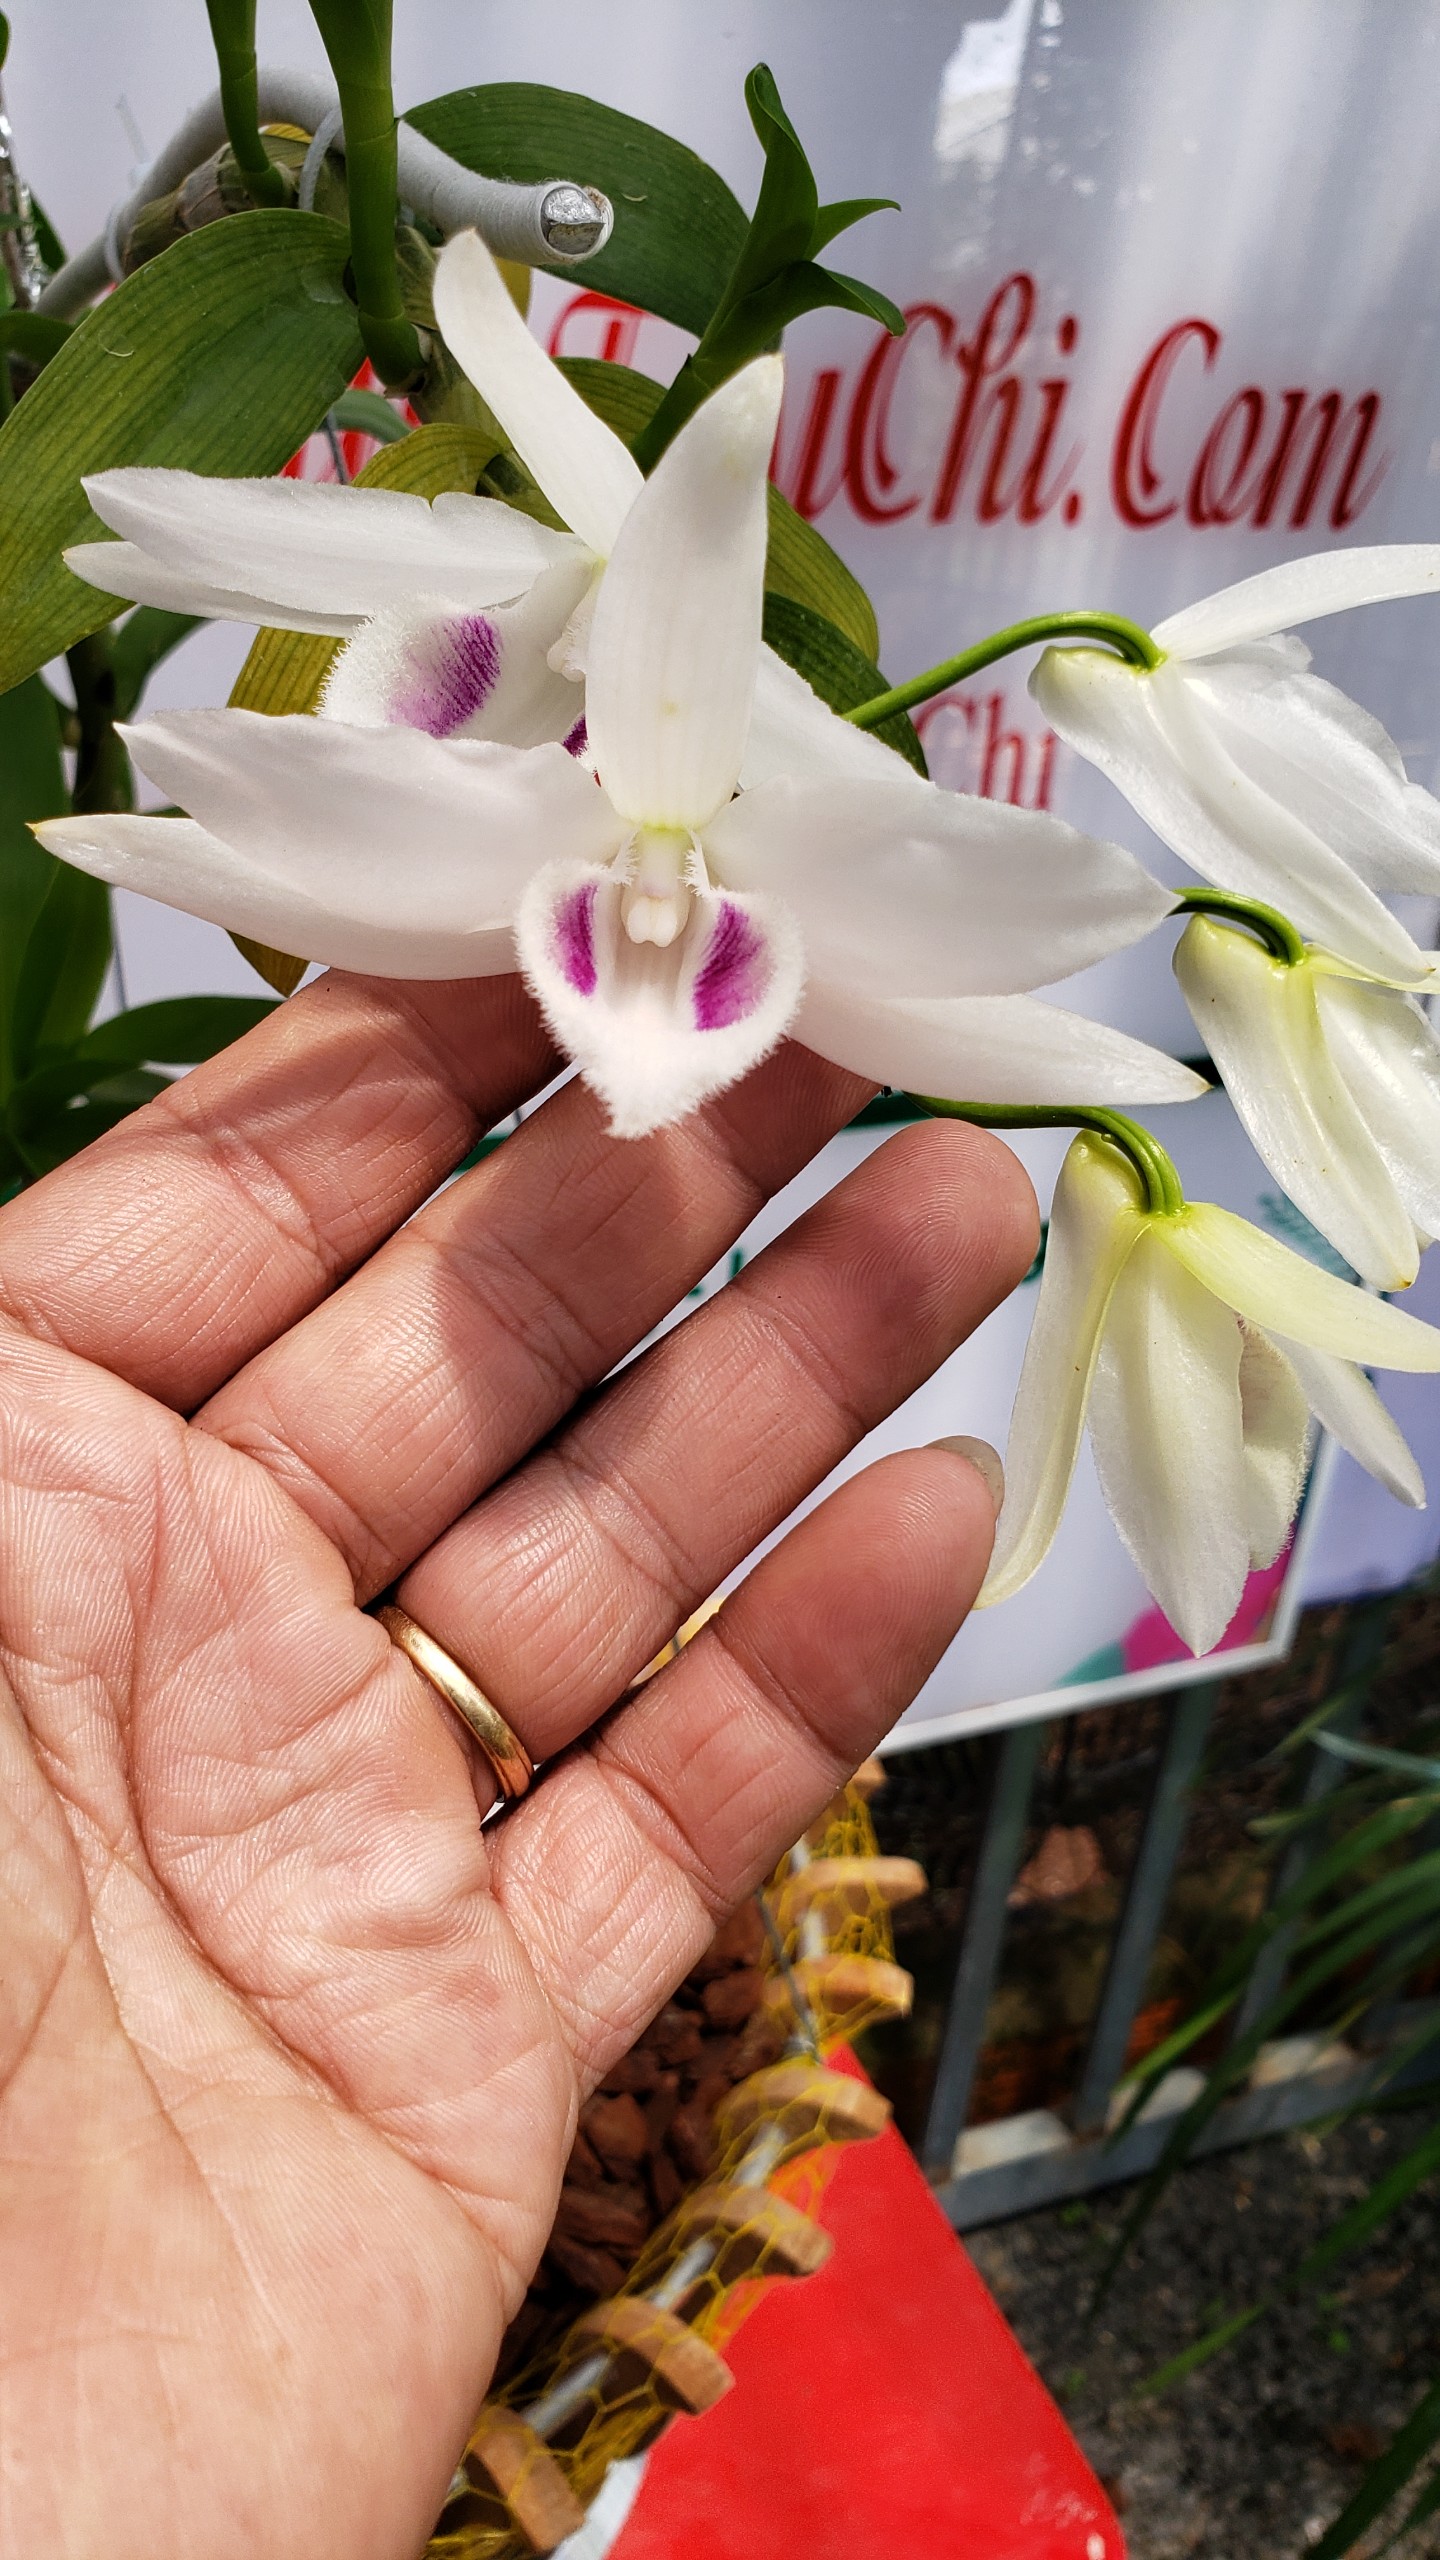 Lan 5 Cánh Trắng Phú Thọ là loại hoa độc đáo, được biết đến với những đốm vàng và phấn trắng trên cánh hoa. Hãy chiêm ngưỡng hình ảnh đầy sức sống của loài hoa này và cảm nhận sự tuyệt diệu của thiên nhiên.